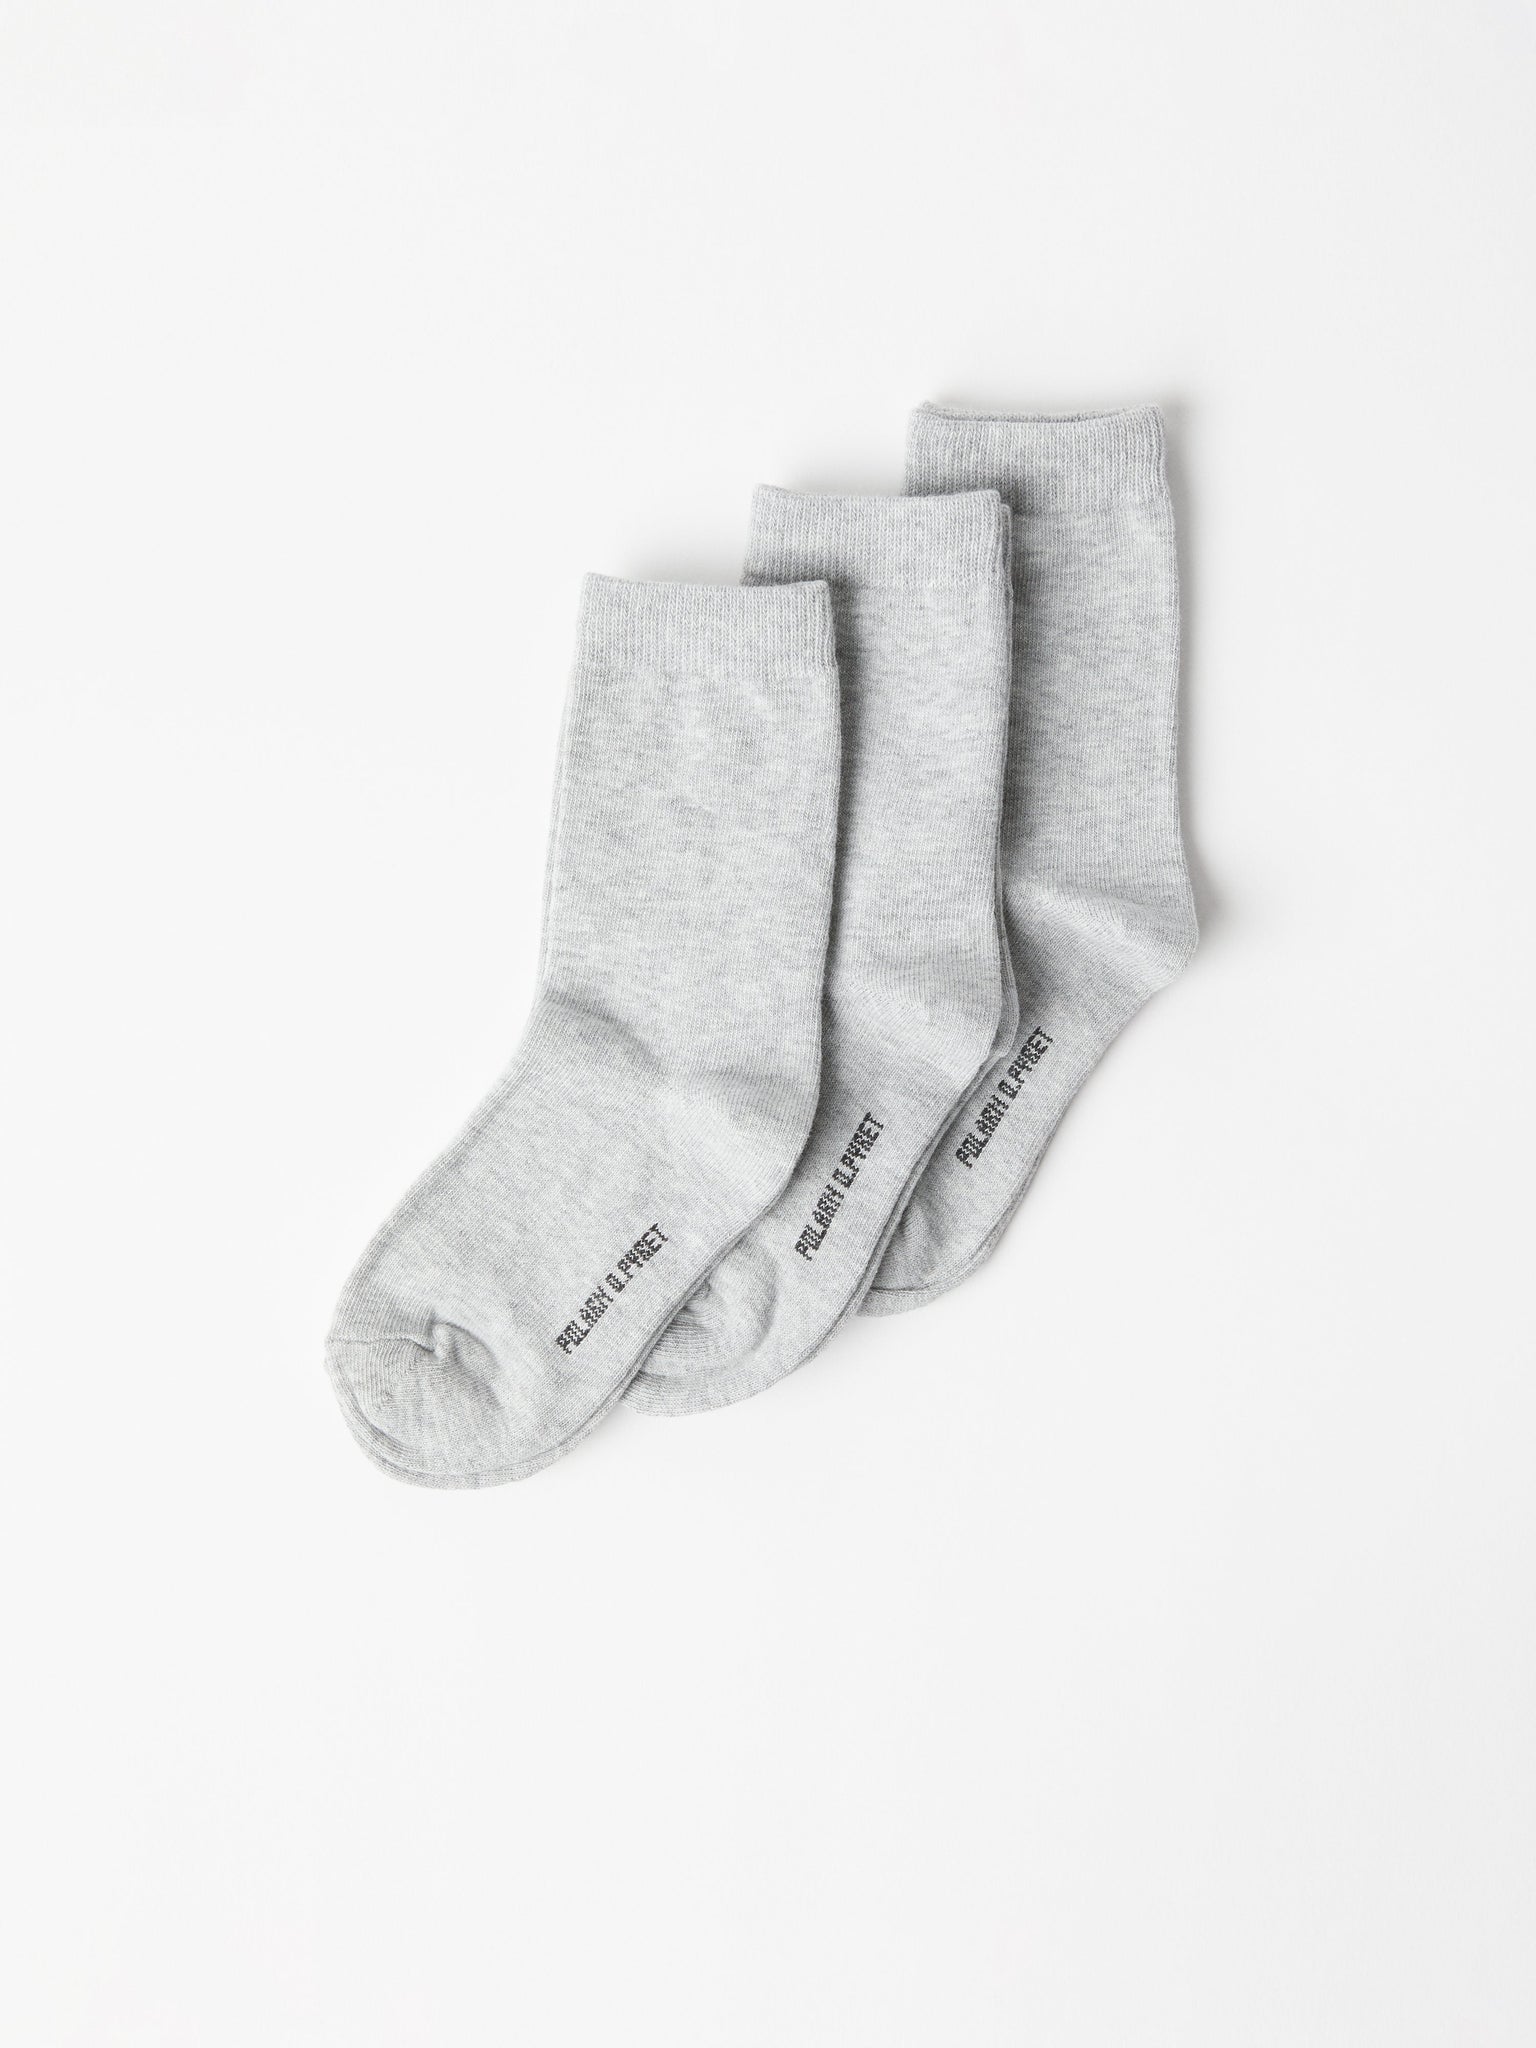 3 Pack Kids Socks Grey Unisex